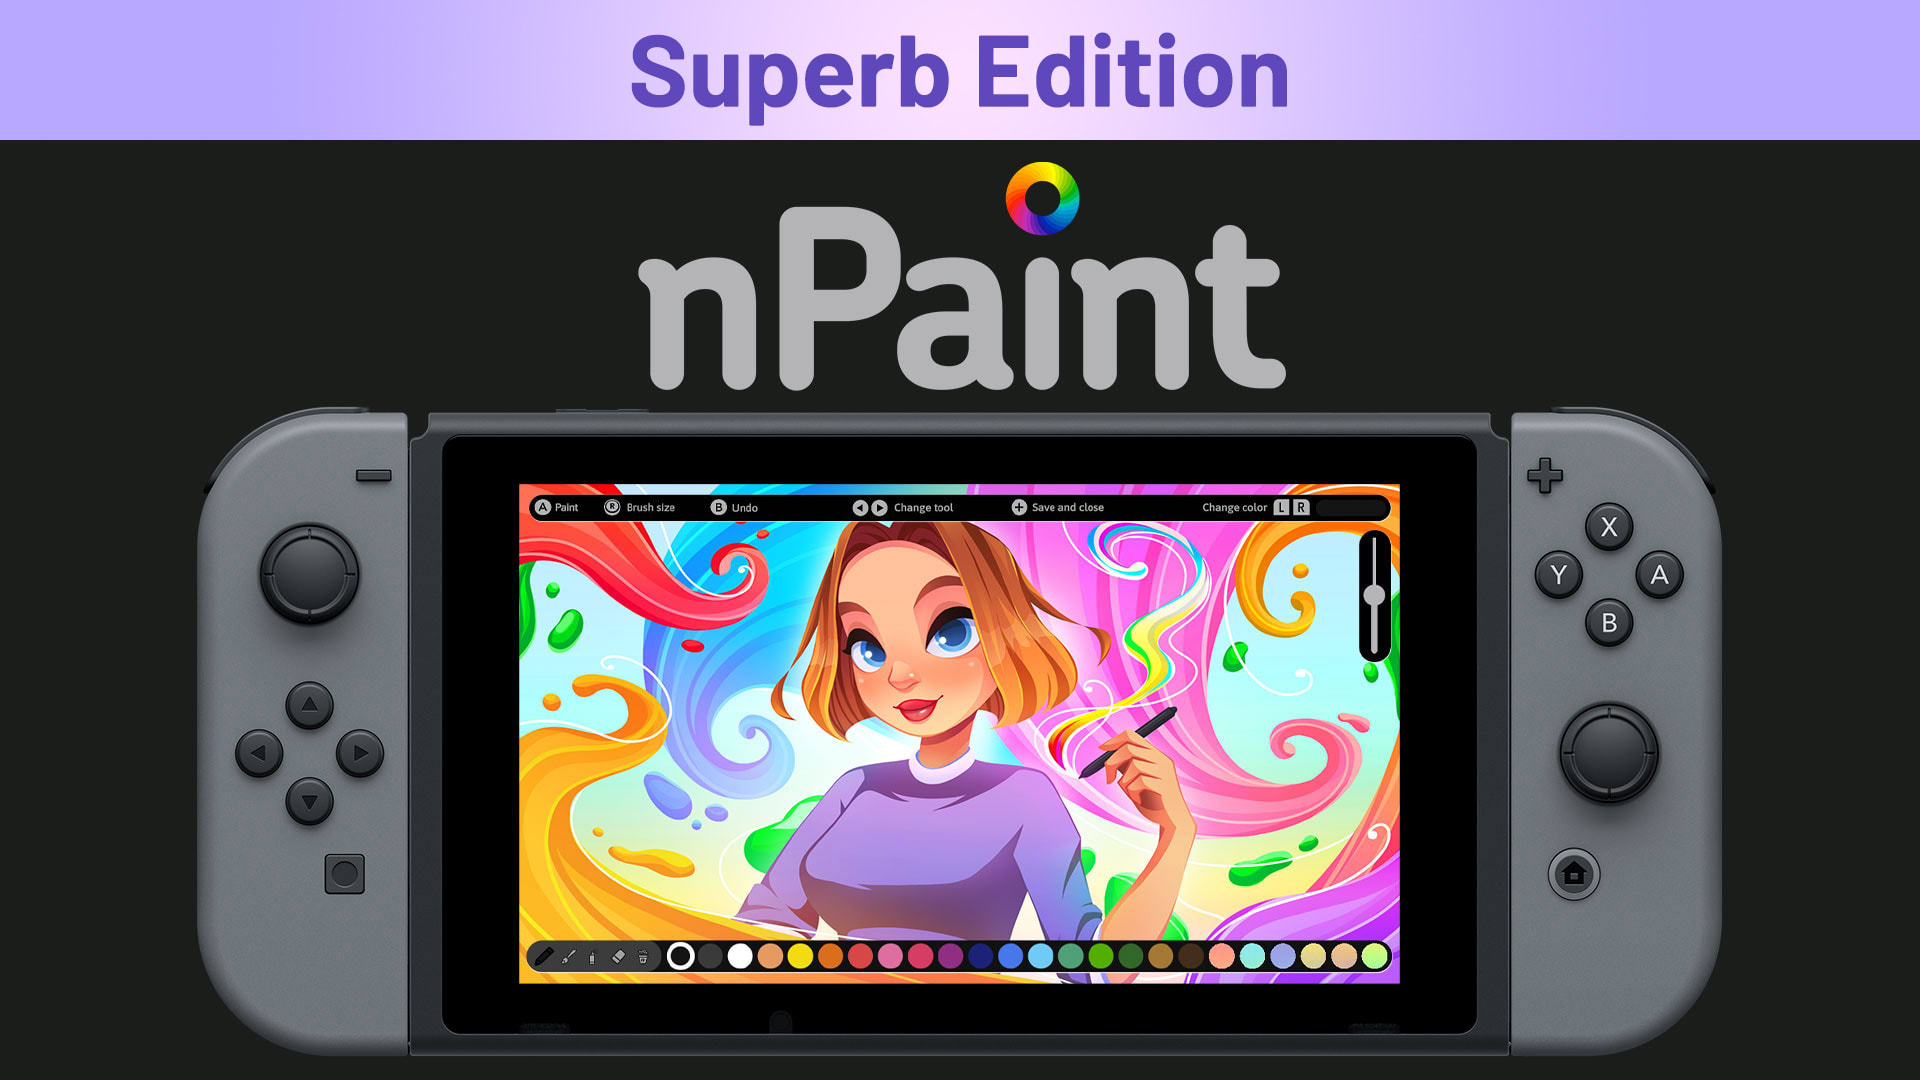 nPaint Superb Edition